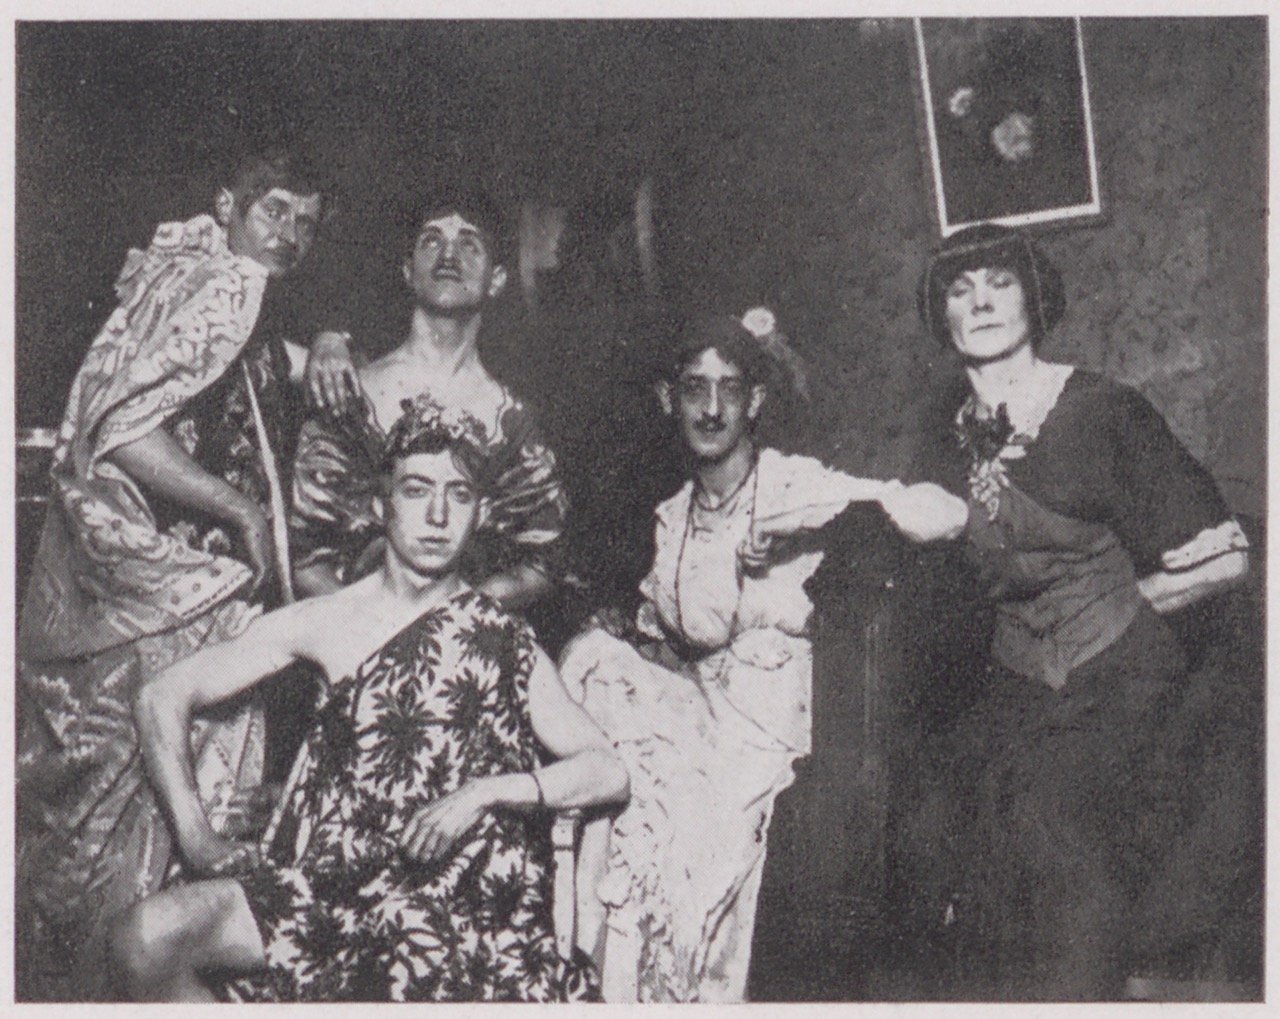 Gruppenaufnahme von Darstellern einer Fronttheatervorstellung (Magnus-Hirschfeld-Gesellschaft Public Domain Mark)